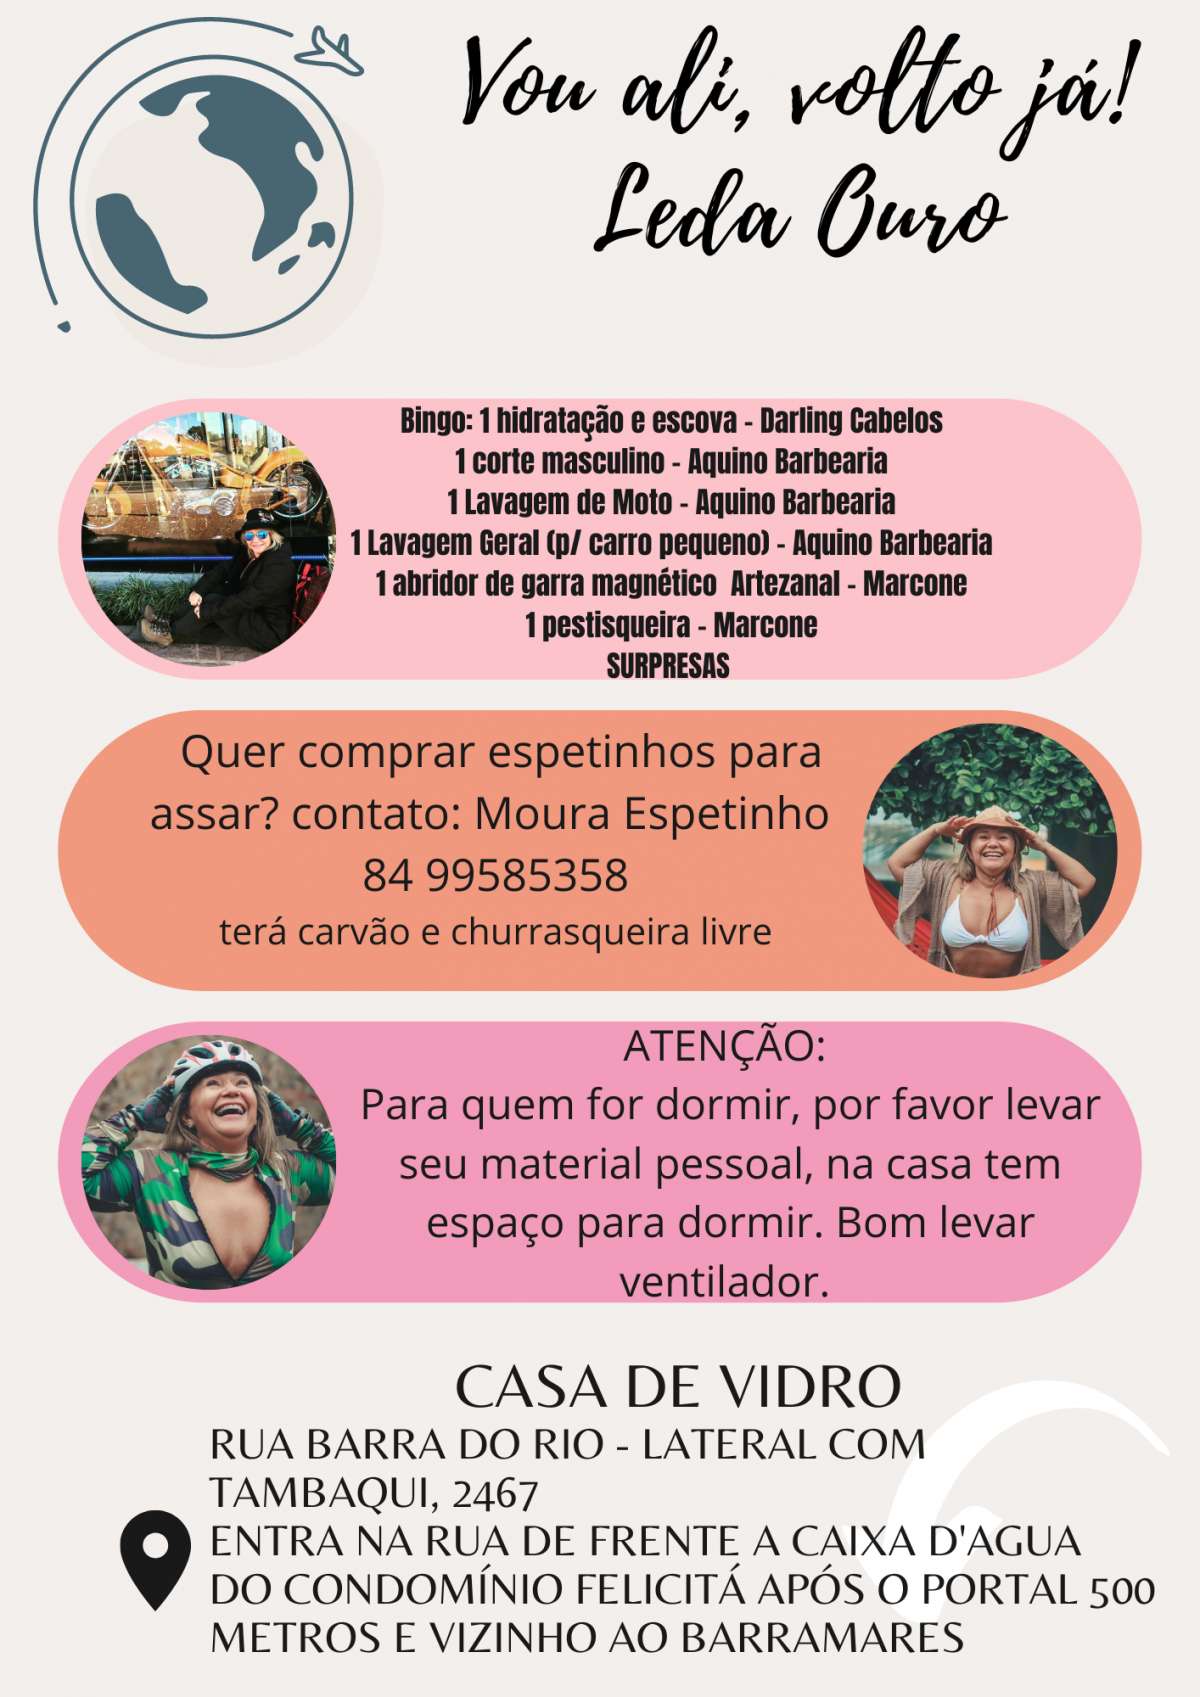 Leda Sales - Braga - Gestão de Redes Sociais